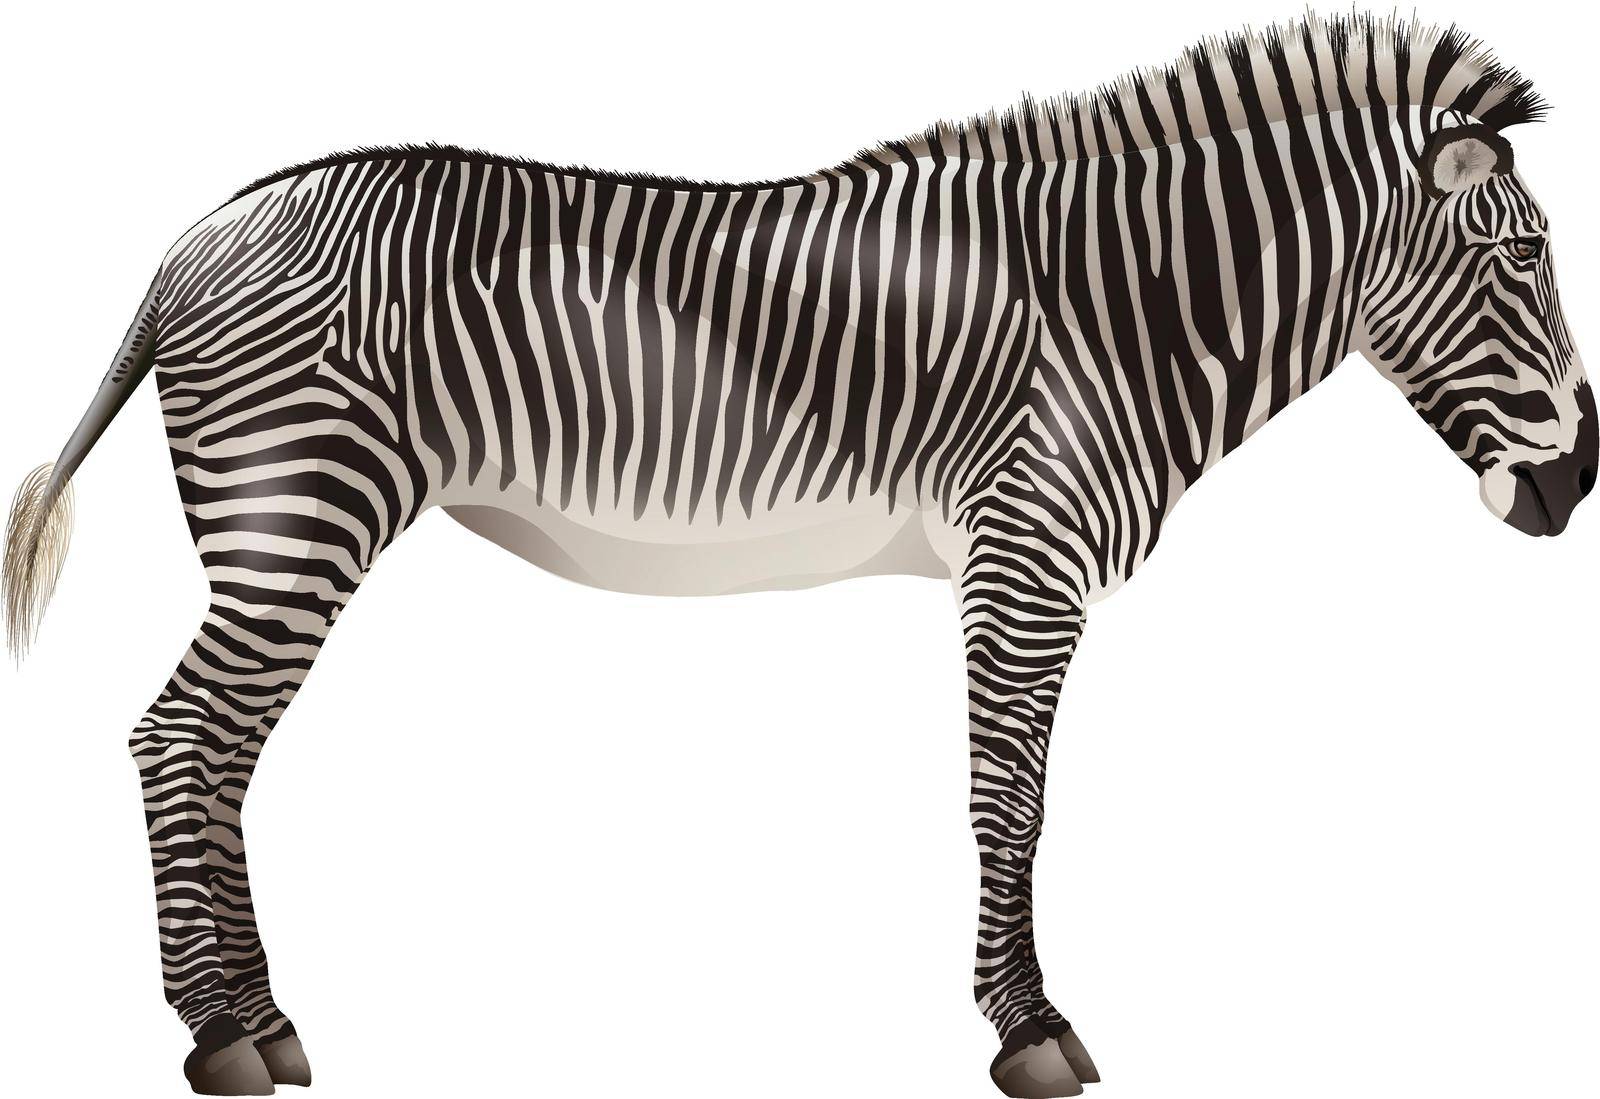 Zebra by iimages